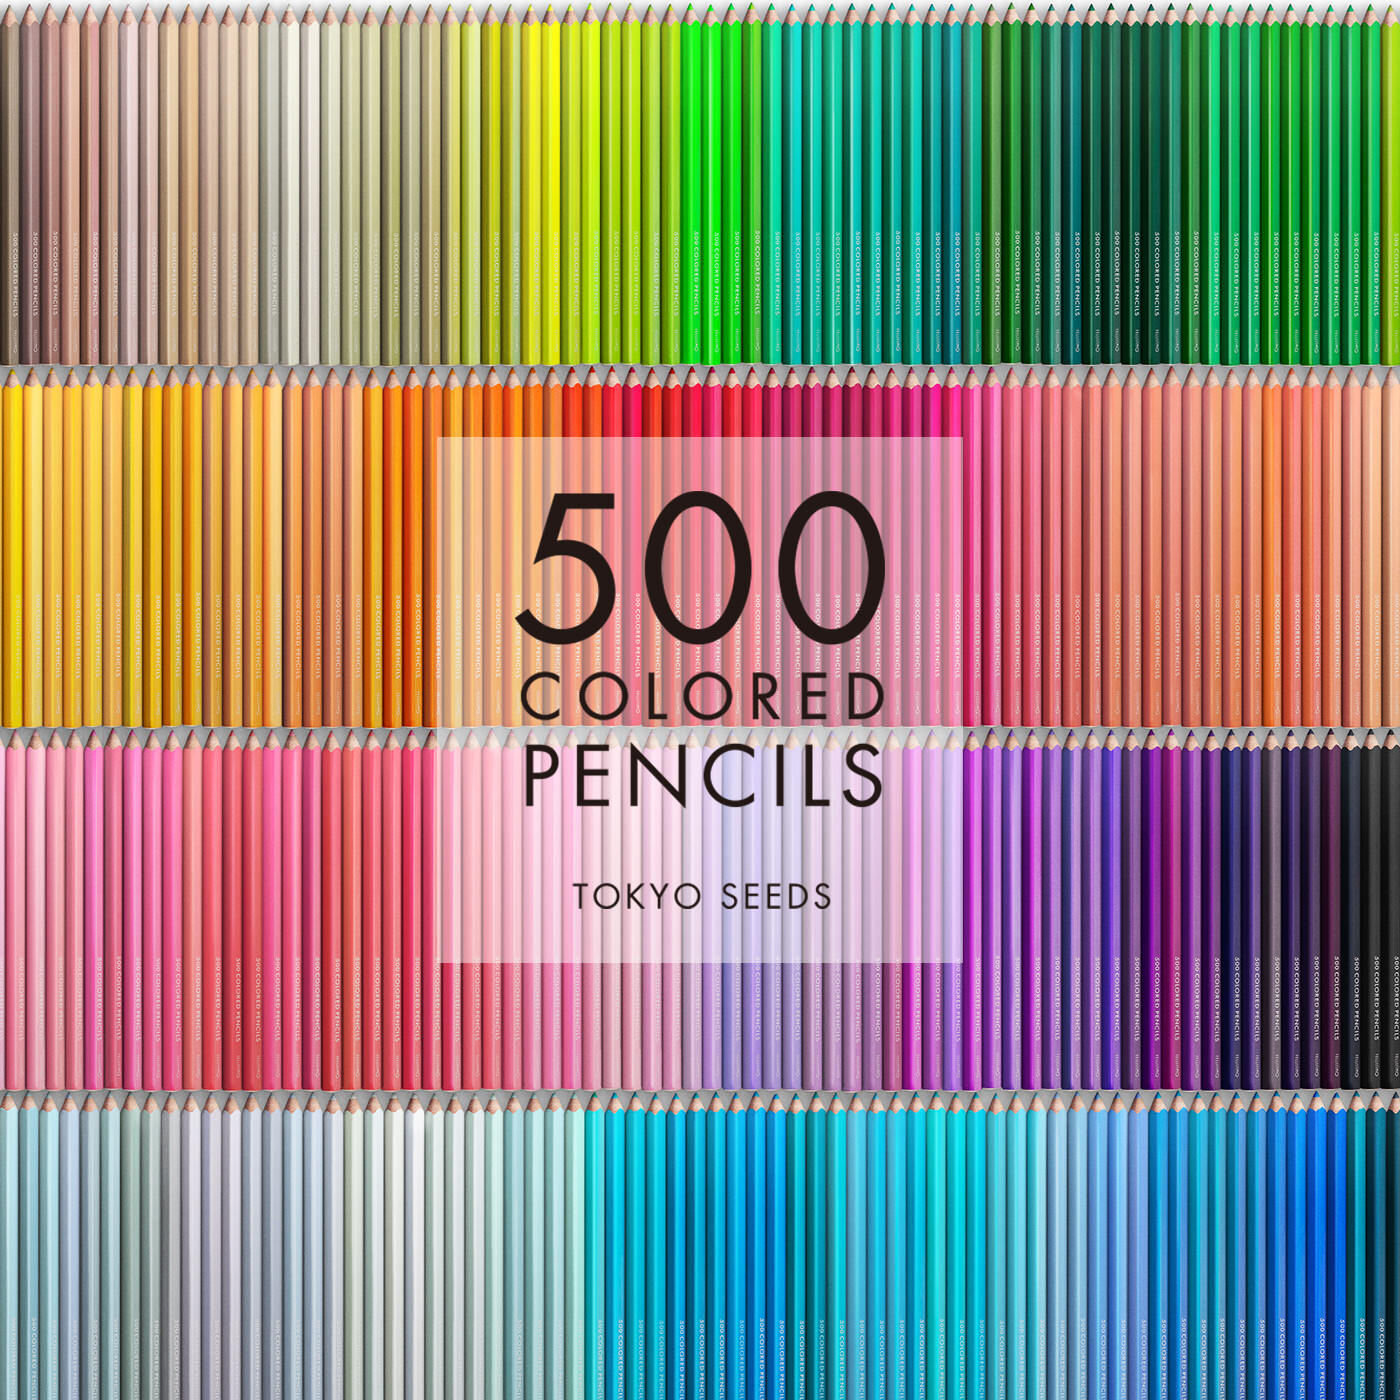 Real Stock|【387/500 NIMBLE ENIGMA】500色の色えんぴつ TOKYO SEEDS|1992年、世界初の「500色」という膨大な色数の色えんぴつが誕生して以来、その販売数は発売当初から合わせると、世界55ヵ国10万セット以上。今回、メイド・イン・ジャパンにこだわり、すべてが新しく生まれ変わって登場しました。